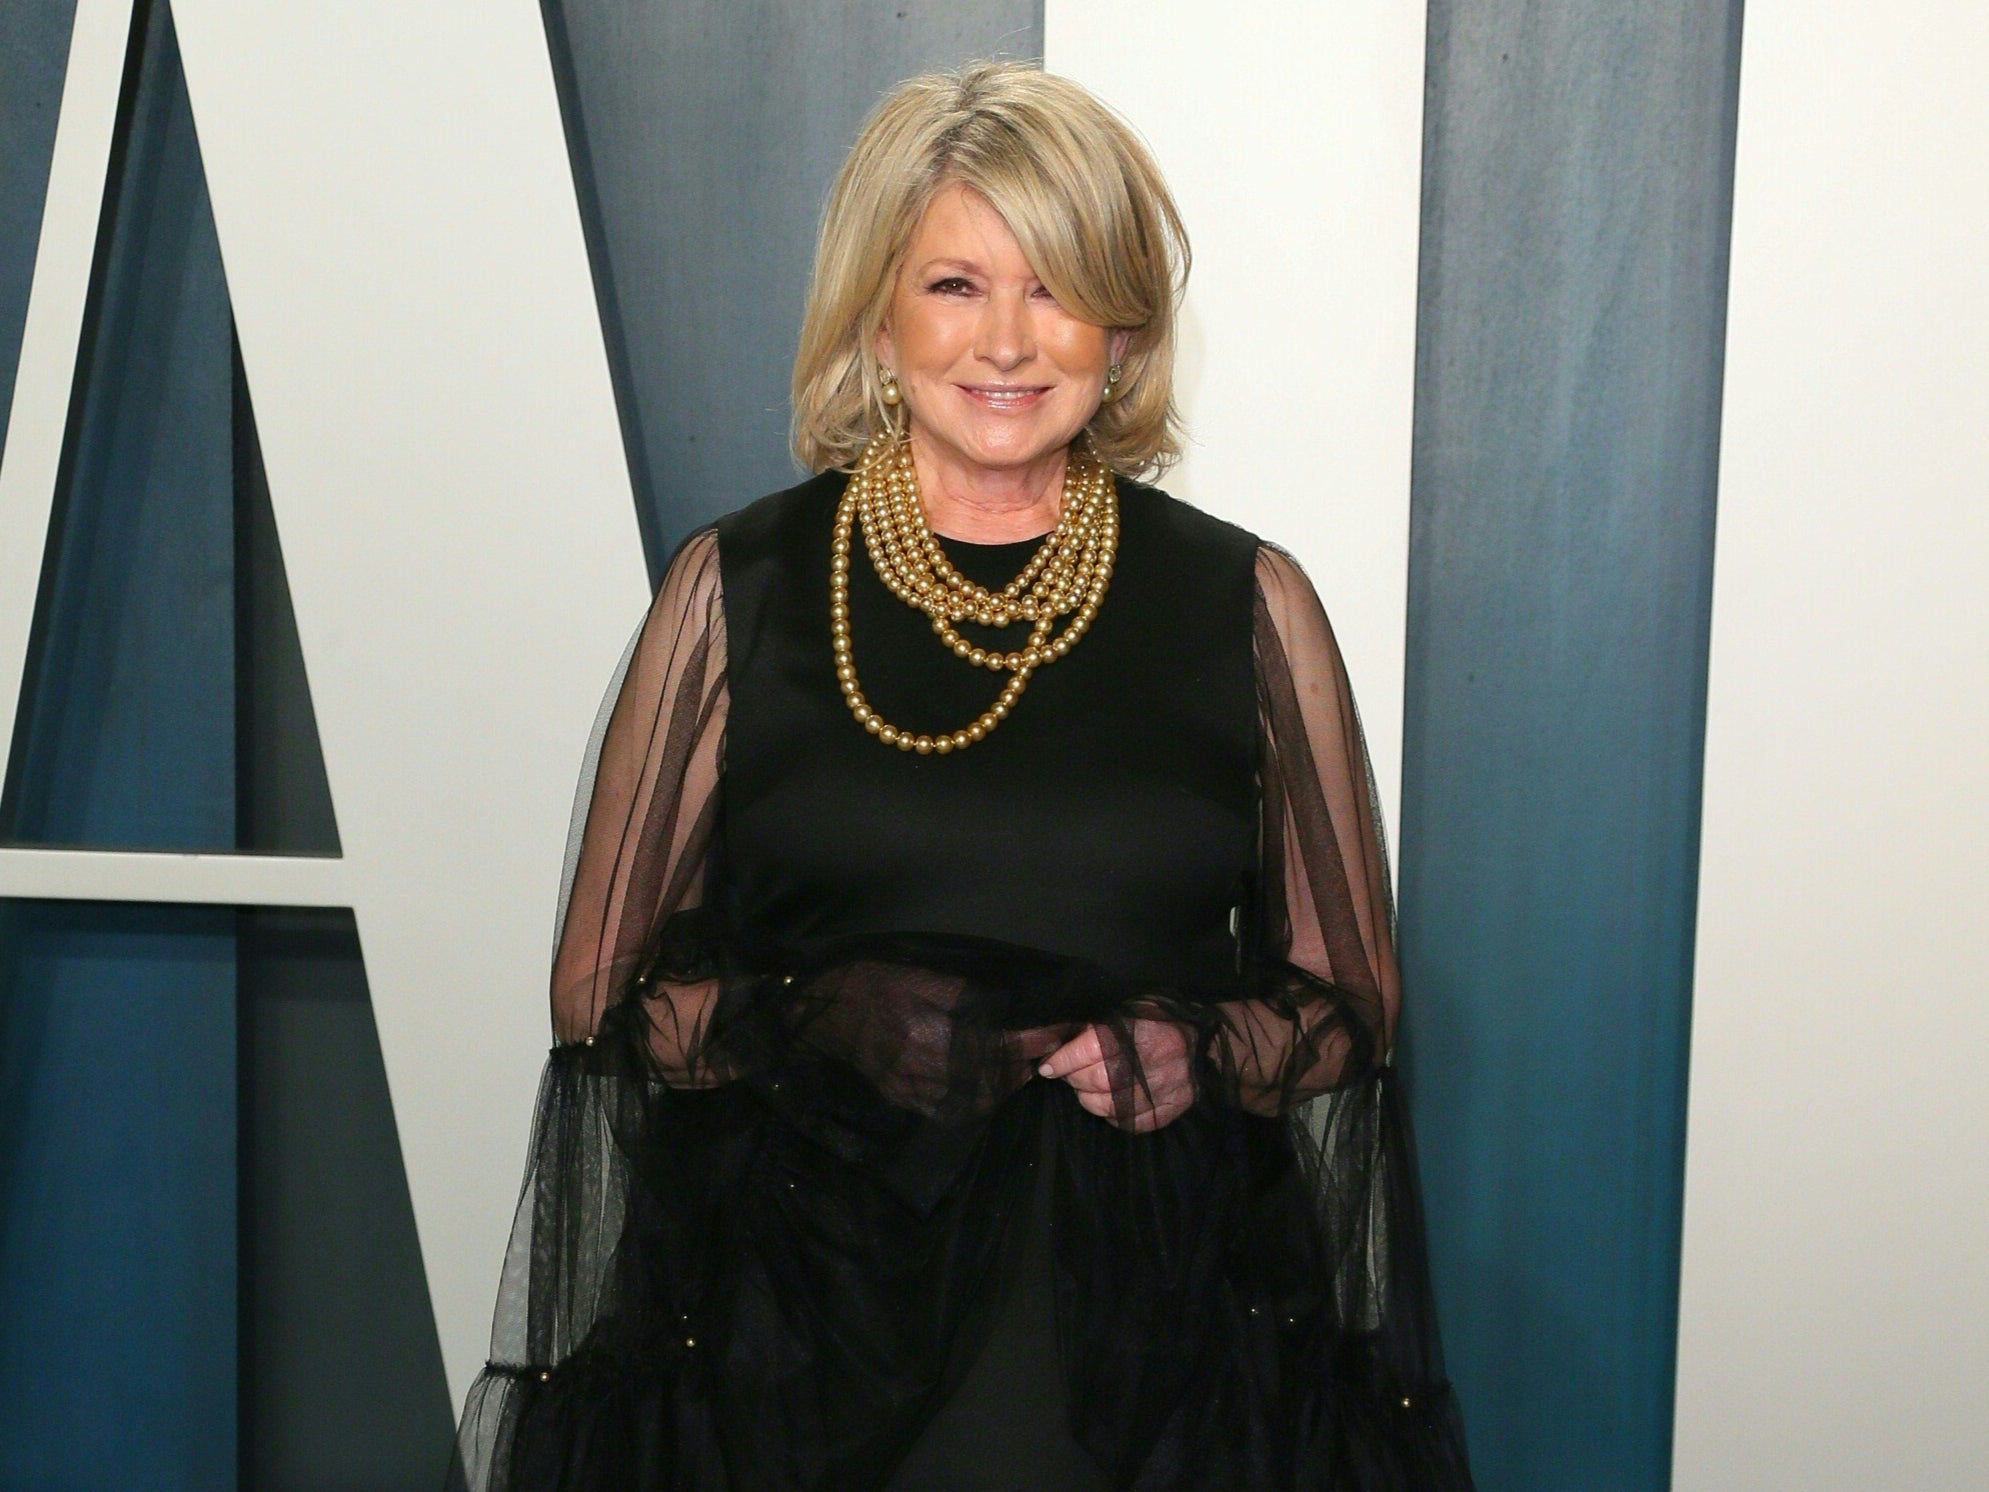 Martha Stewart praised over new photoshoot with Harper’s Bazaar